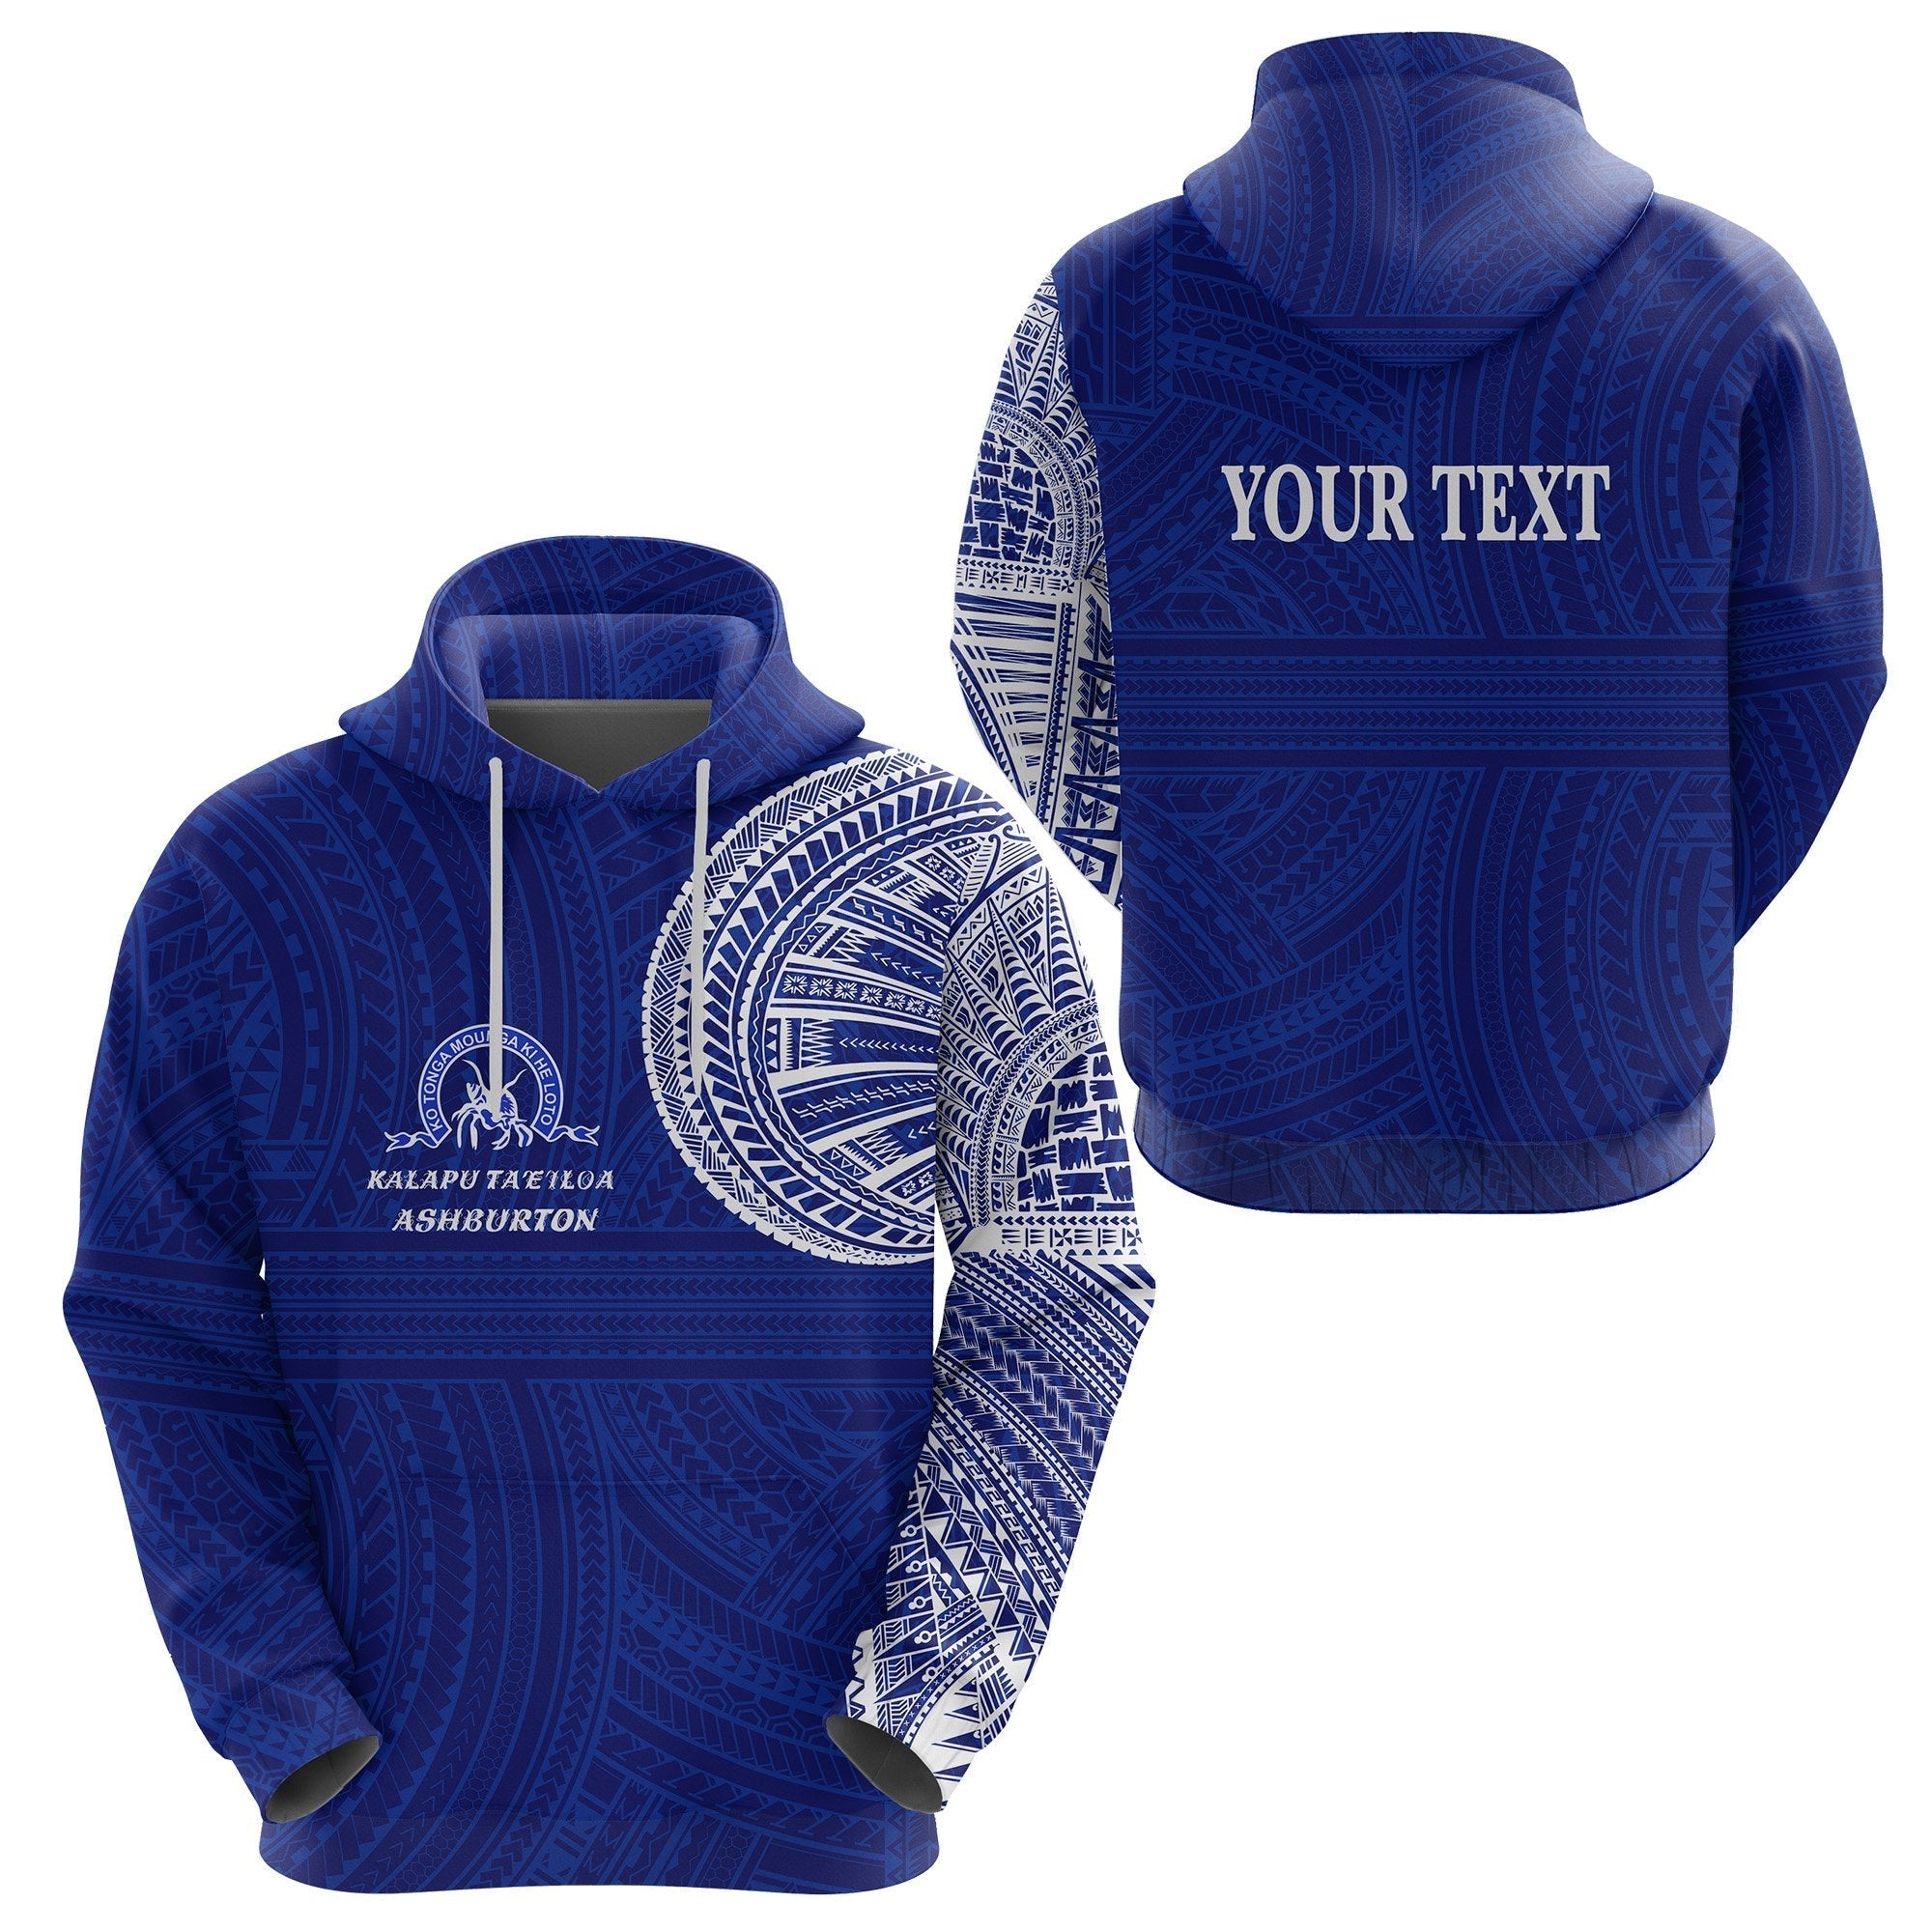 custom-personalised-ko-tonga-hoodie-kalapu-taeiloa-ashburton